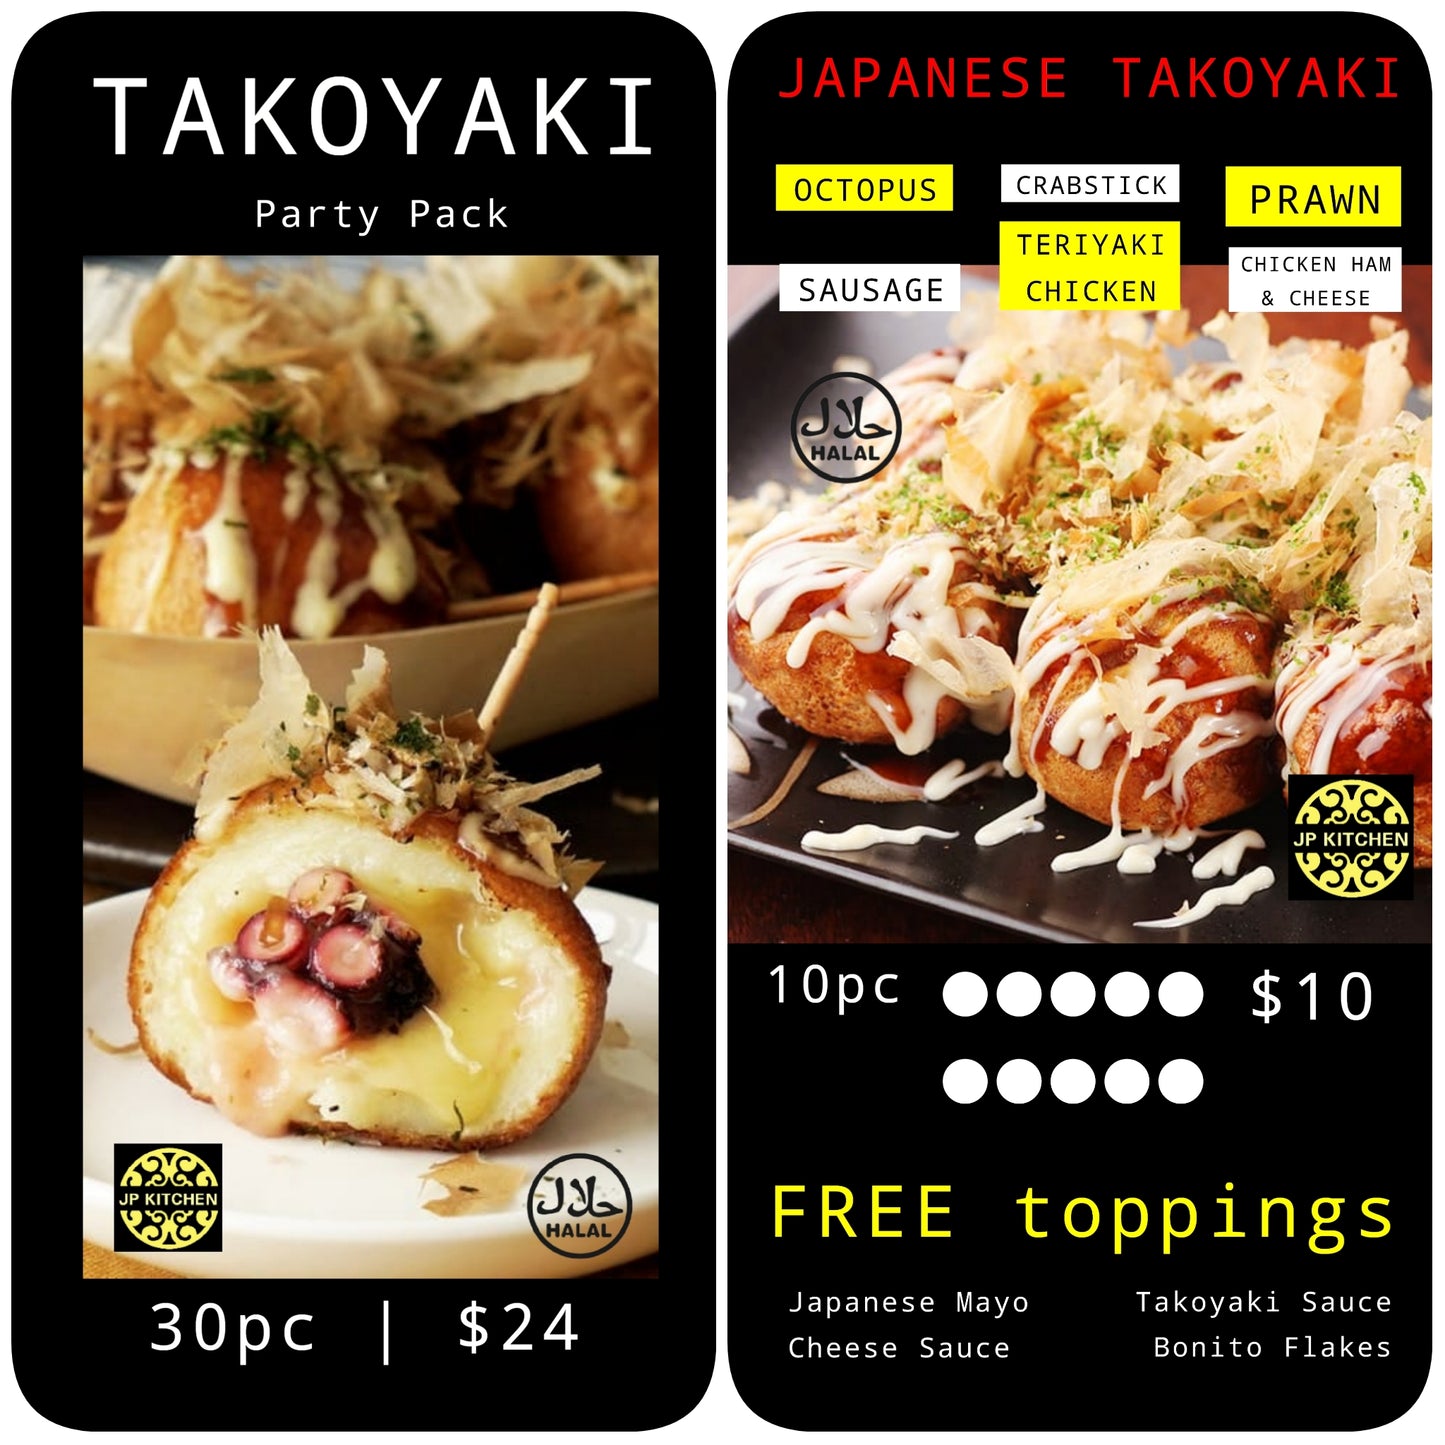 JAPANESE TAKOYAKI FREE TOPPINGS